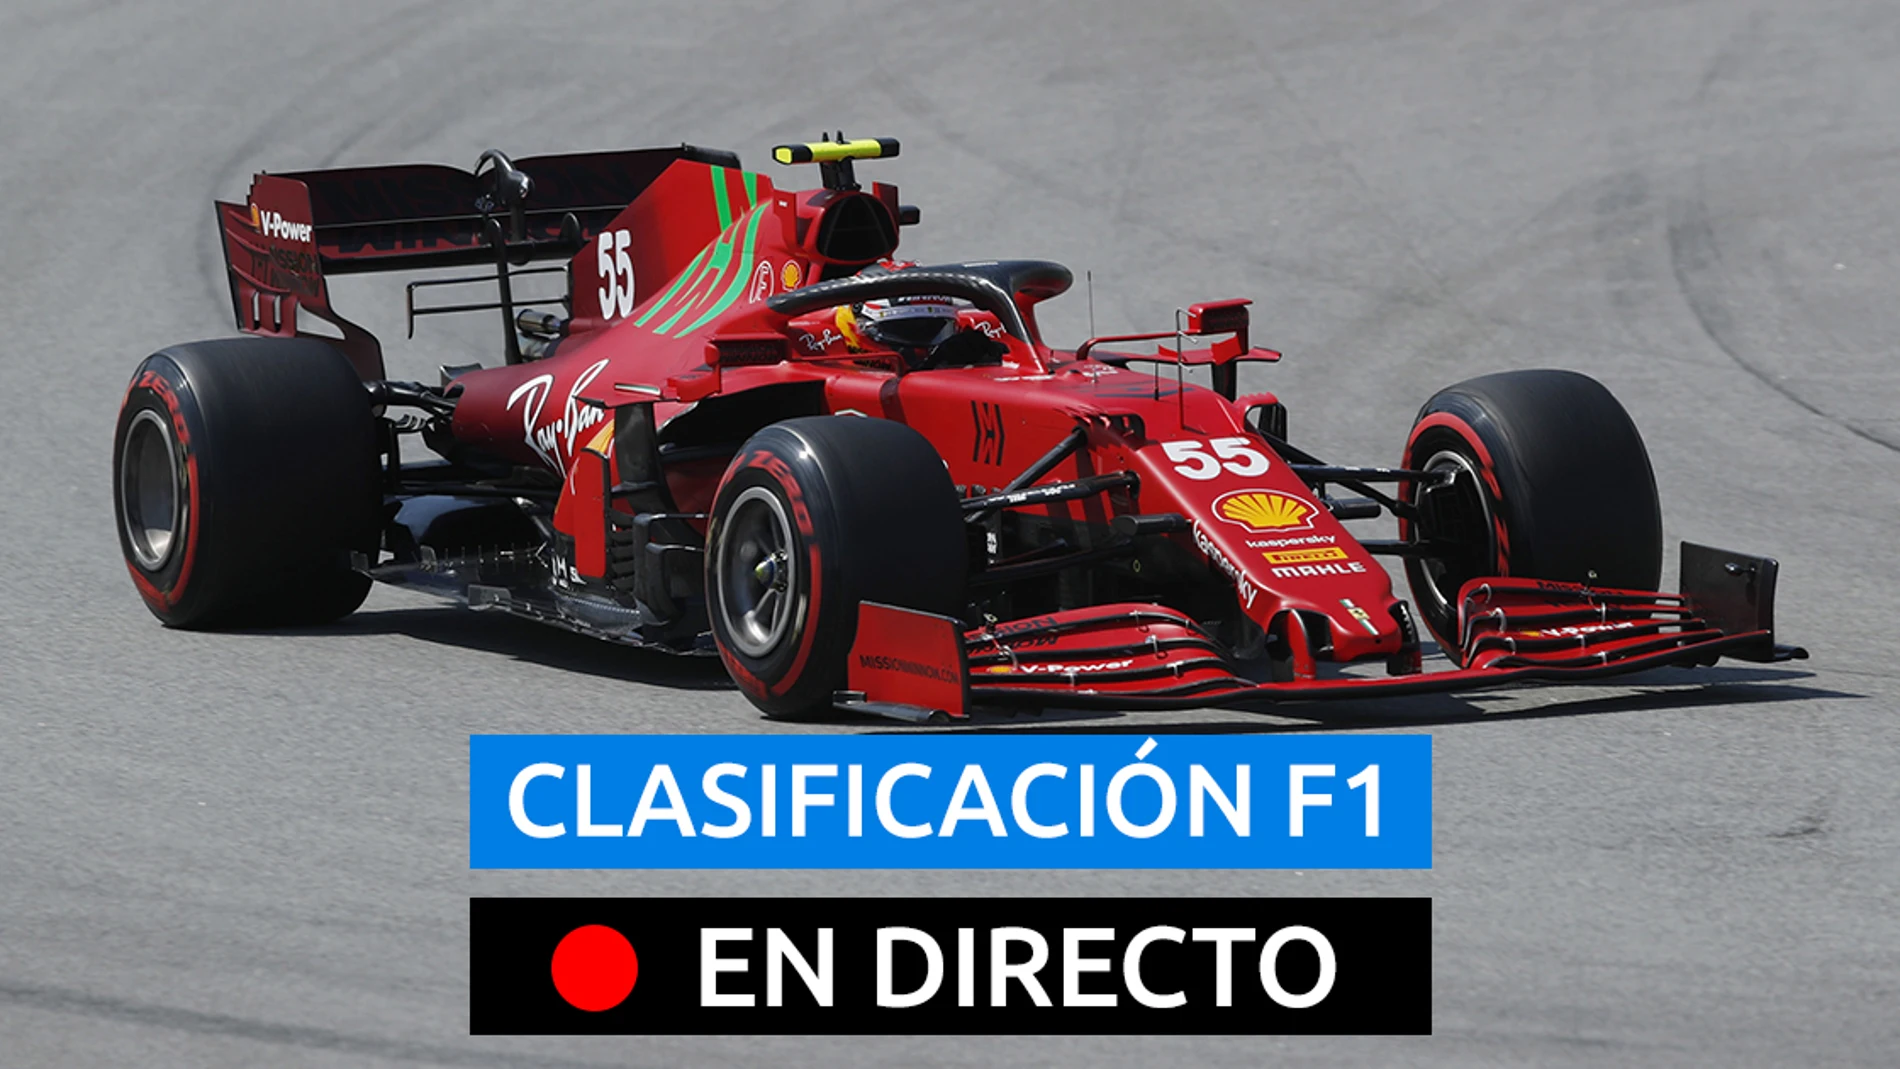 Carlos Sainz, piloto de Ferrari